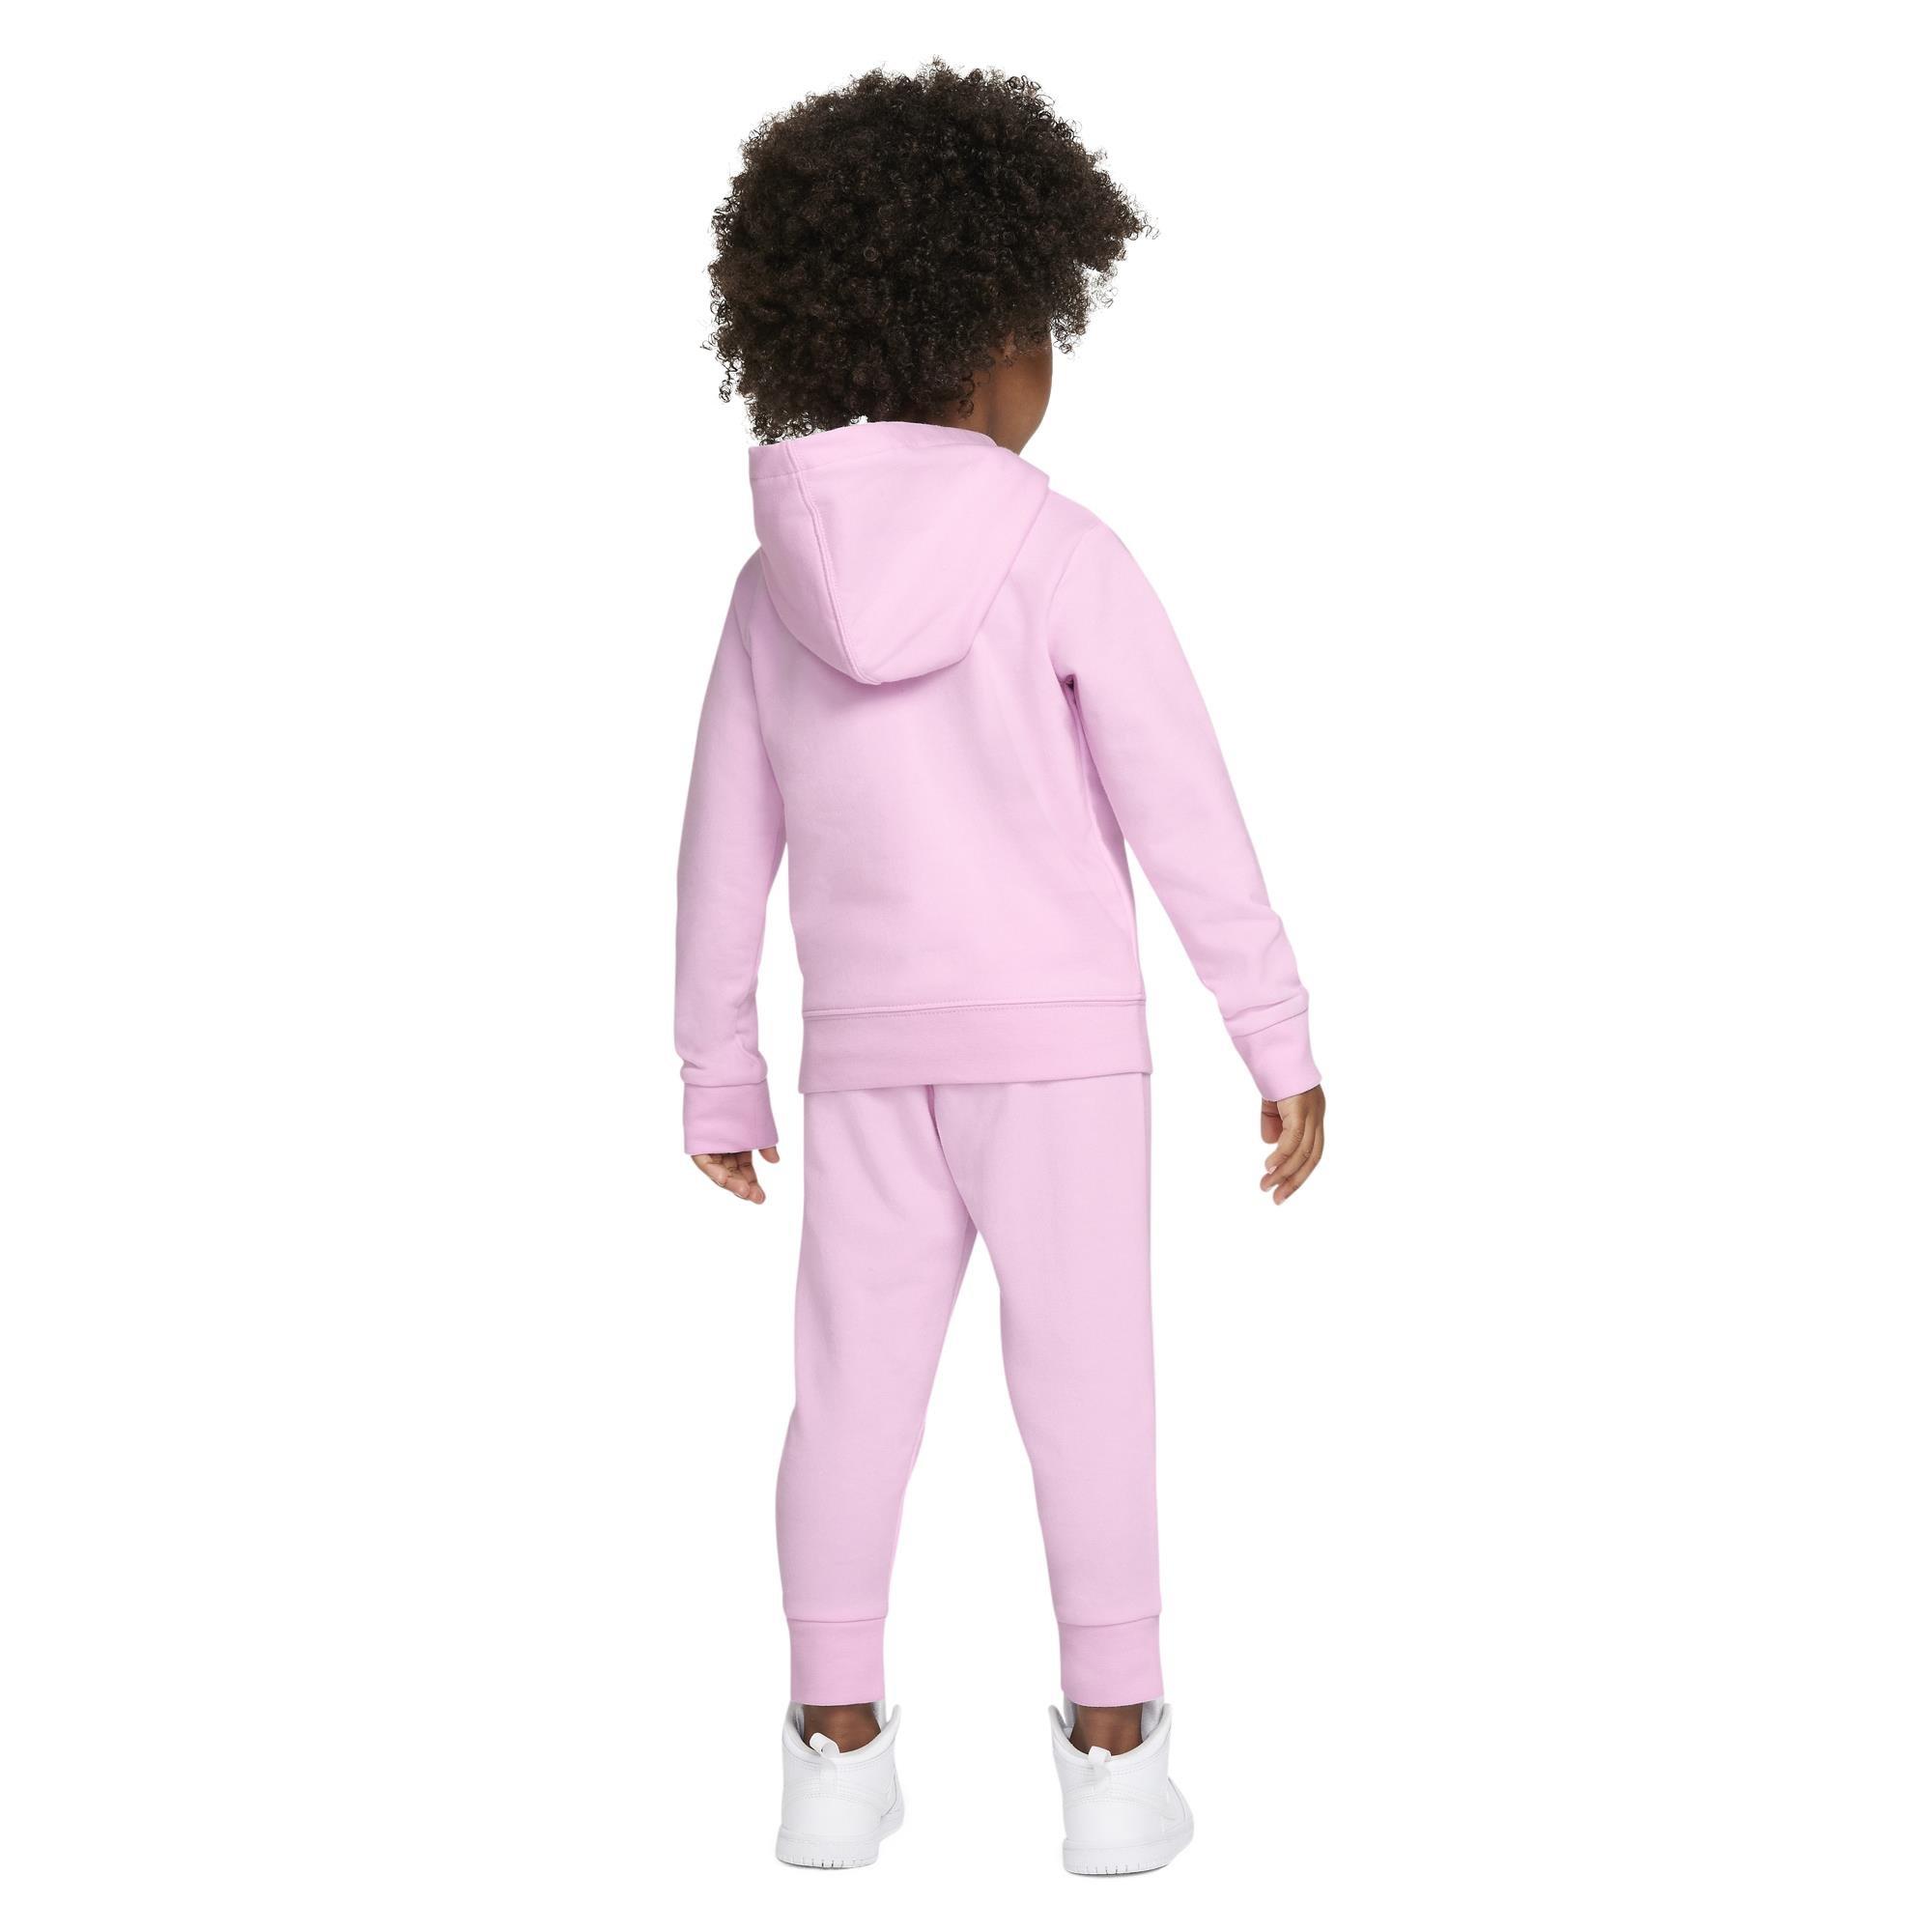 Jordan Toddler Girls' Jersey Dress - Pink, Size: 2T, Polyester